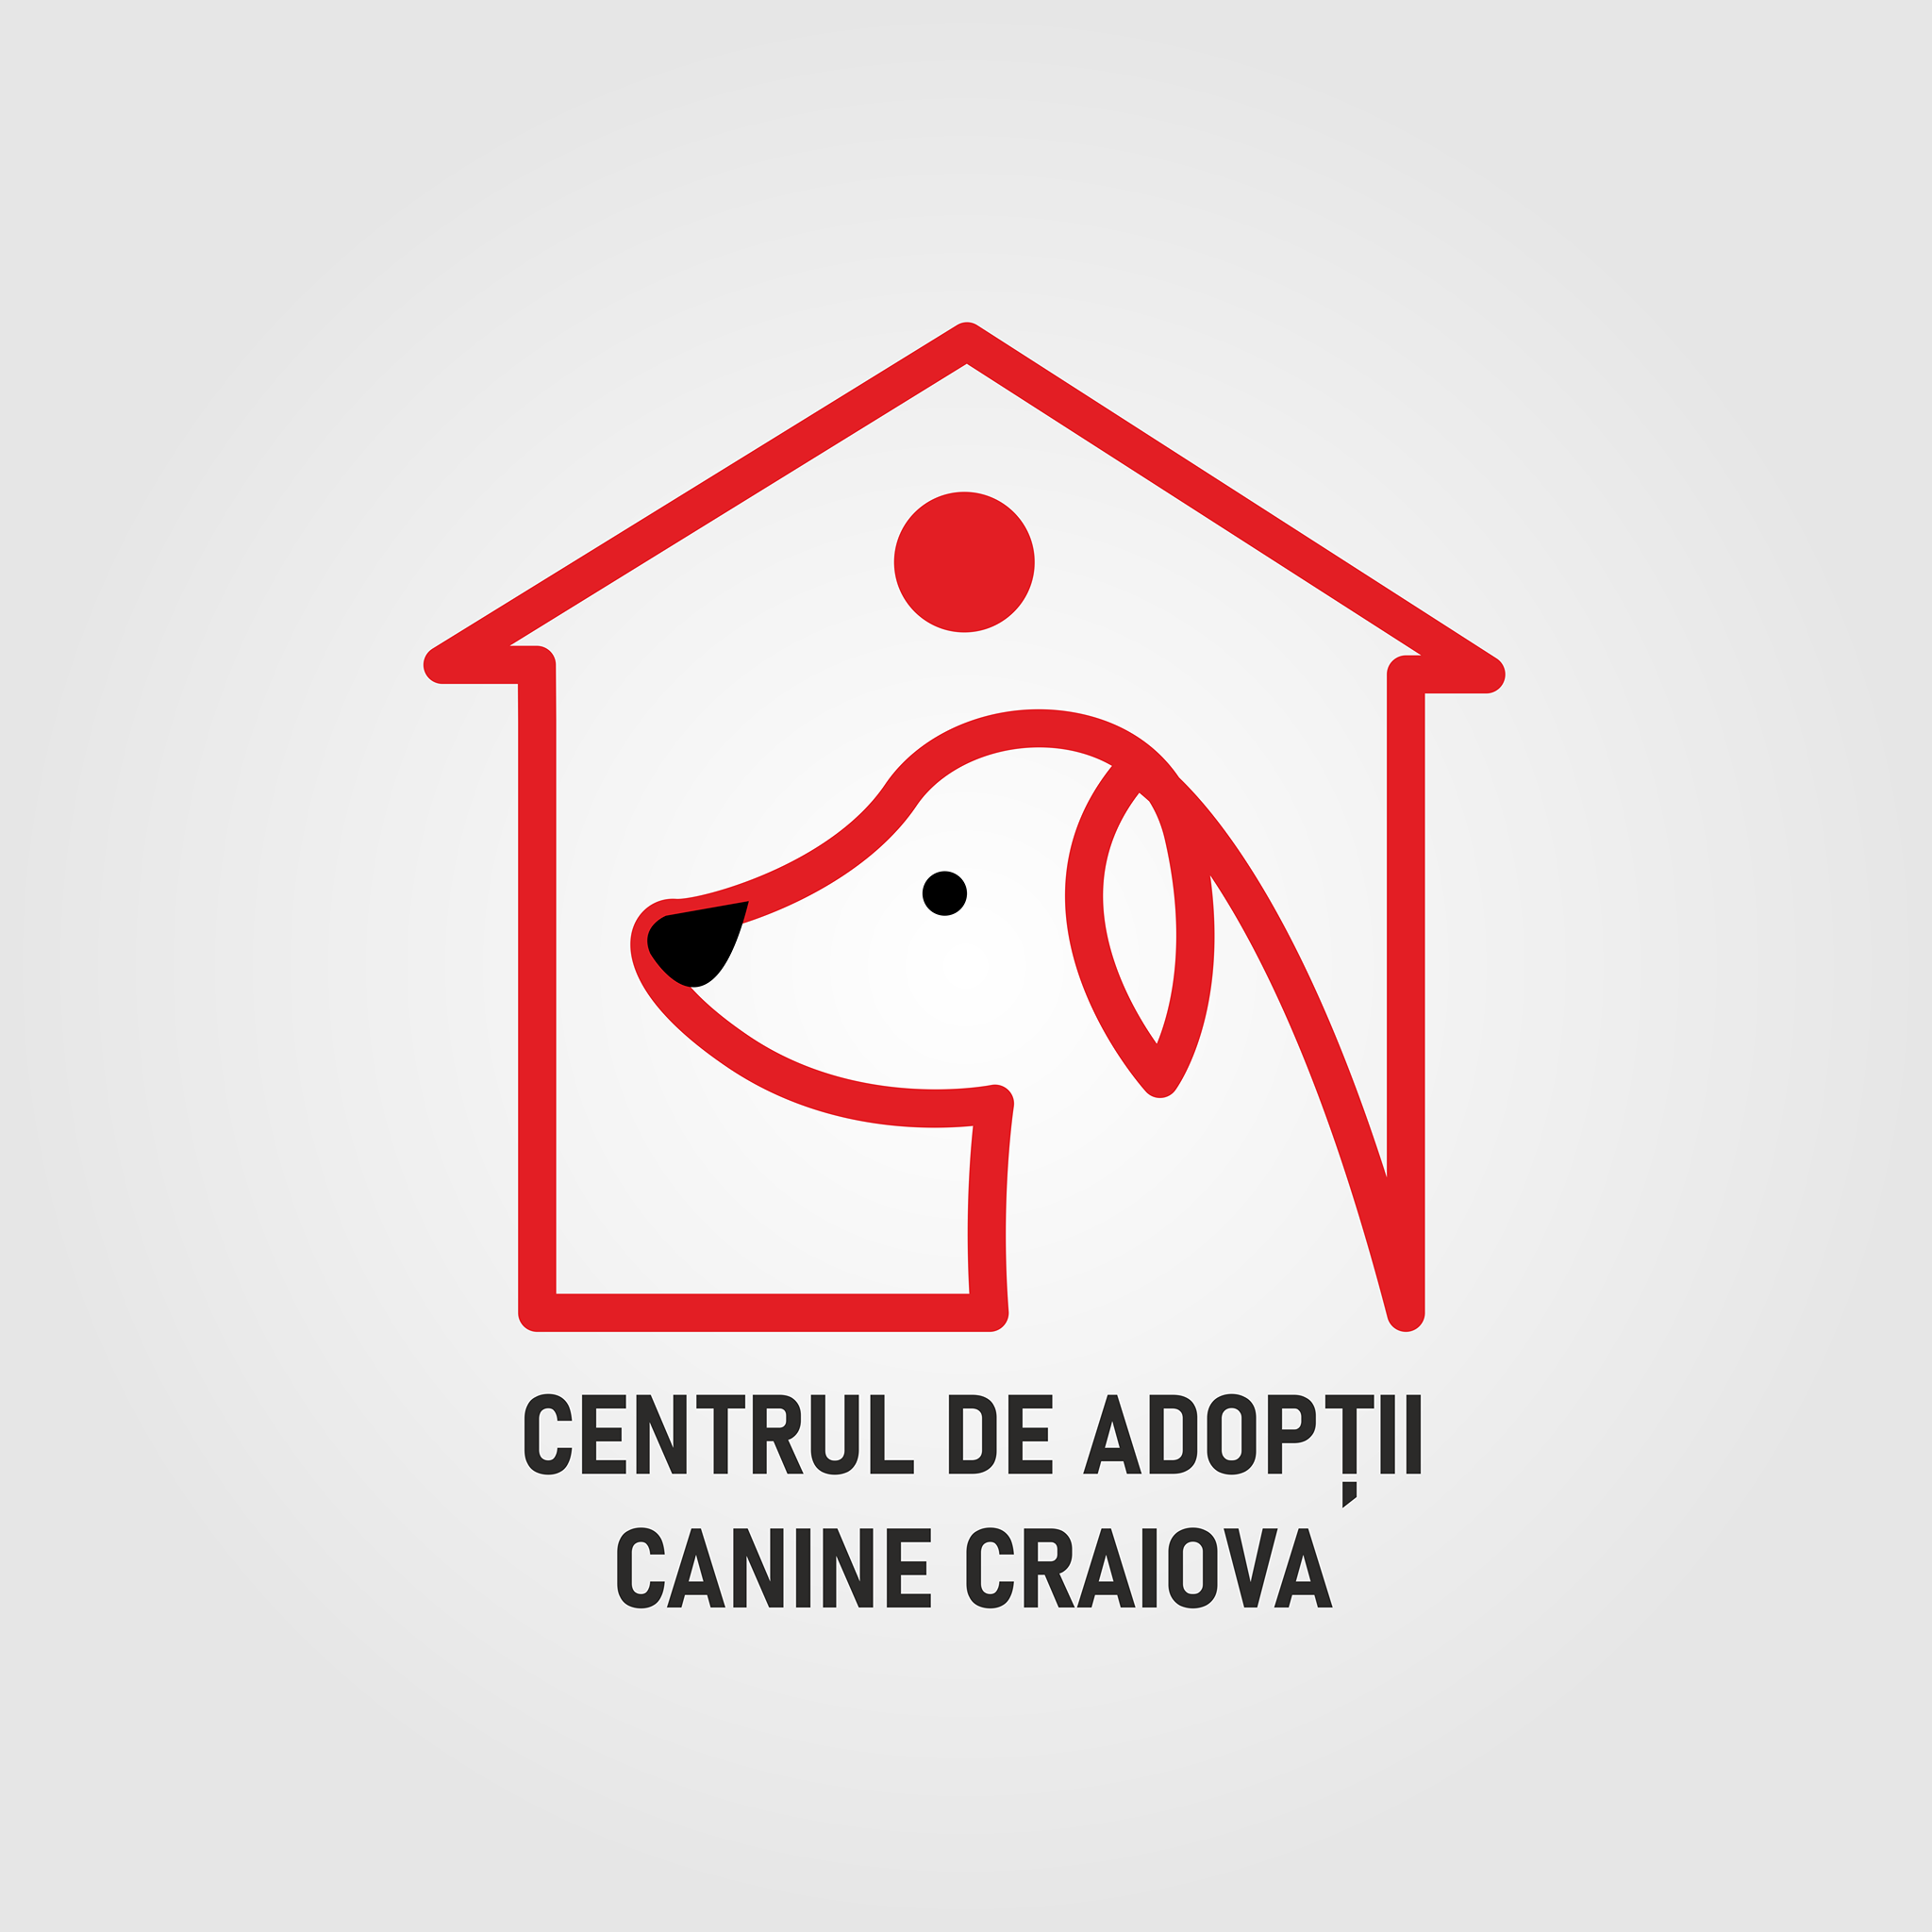 #CraiovaAdoptăFericire. Ce surprize pregătesc blănoșii de la Centrul de adopții canine craiovenilor